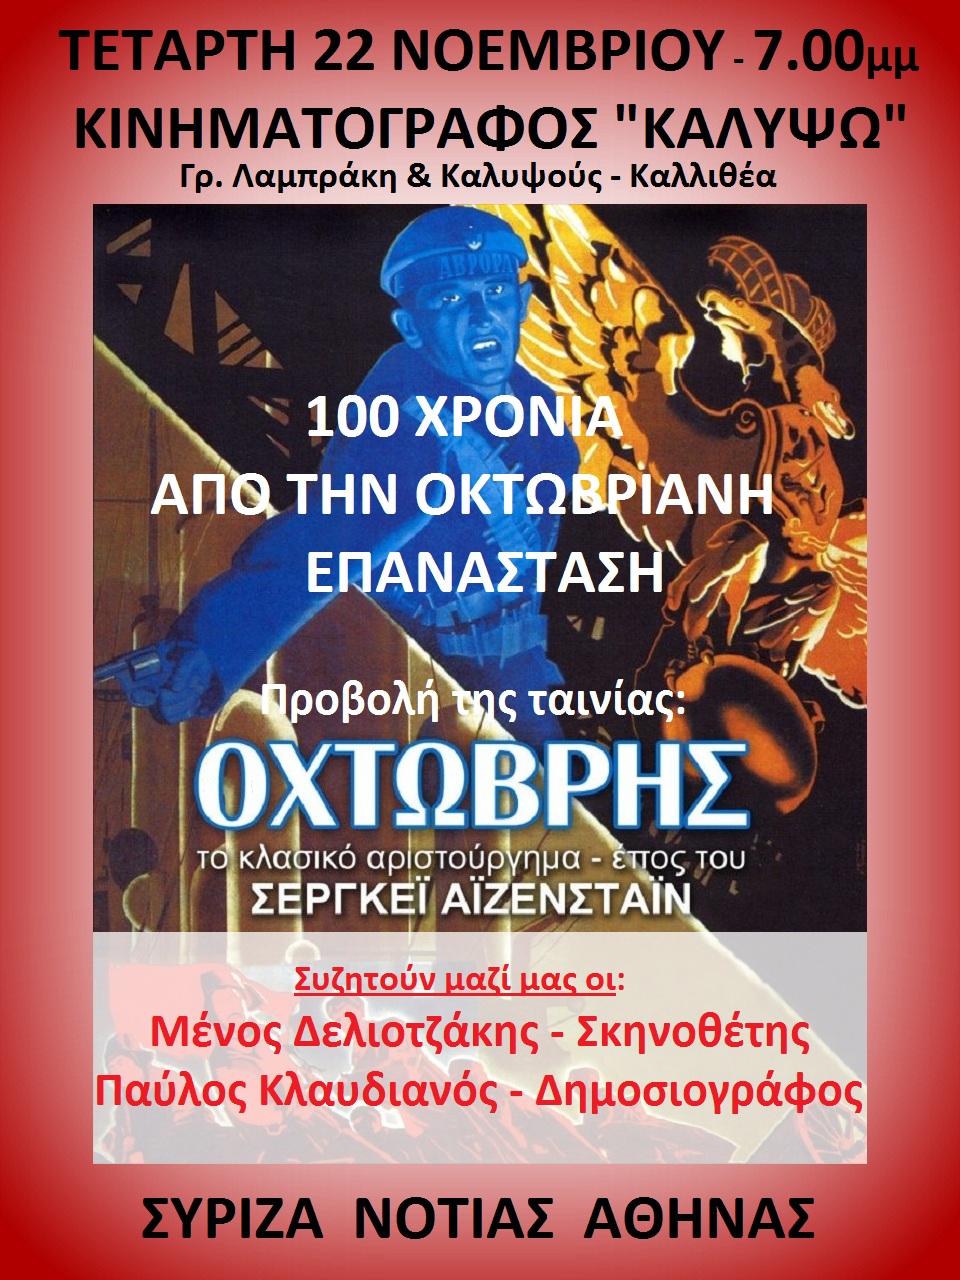 Εκδήλωση του ΣΥΡΙΖΑ Νότιας Αθήνας για τα 100 χρόνια από την Οκτωβριανή Επανάσταση